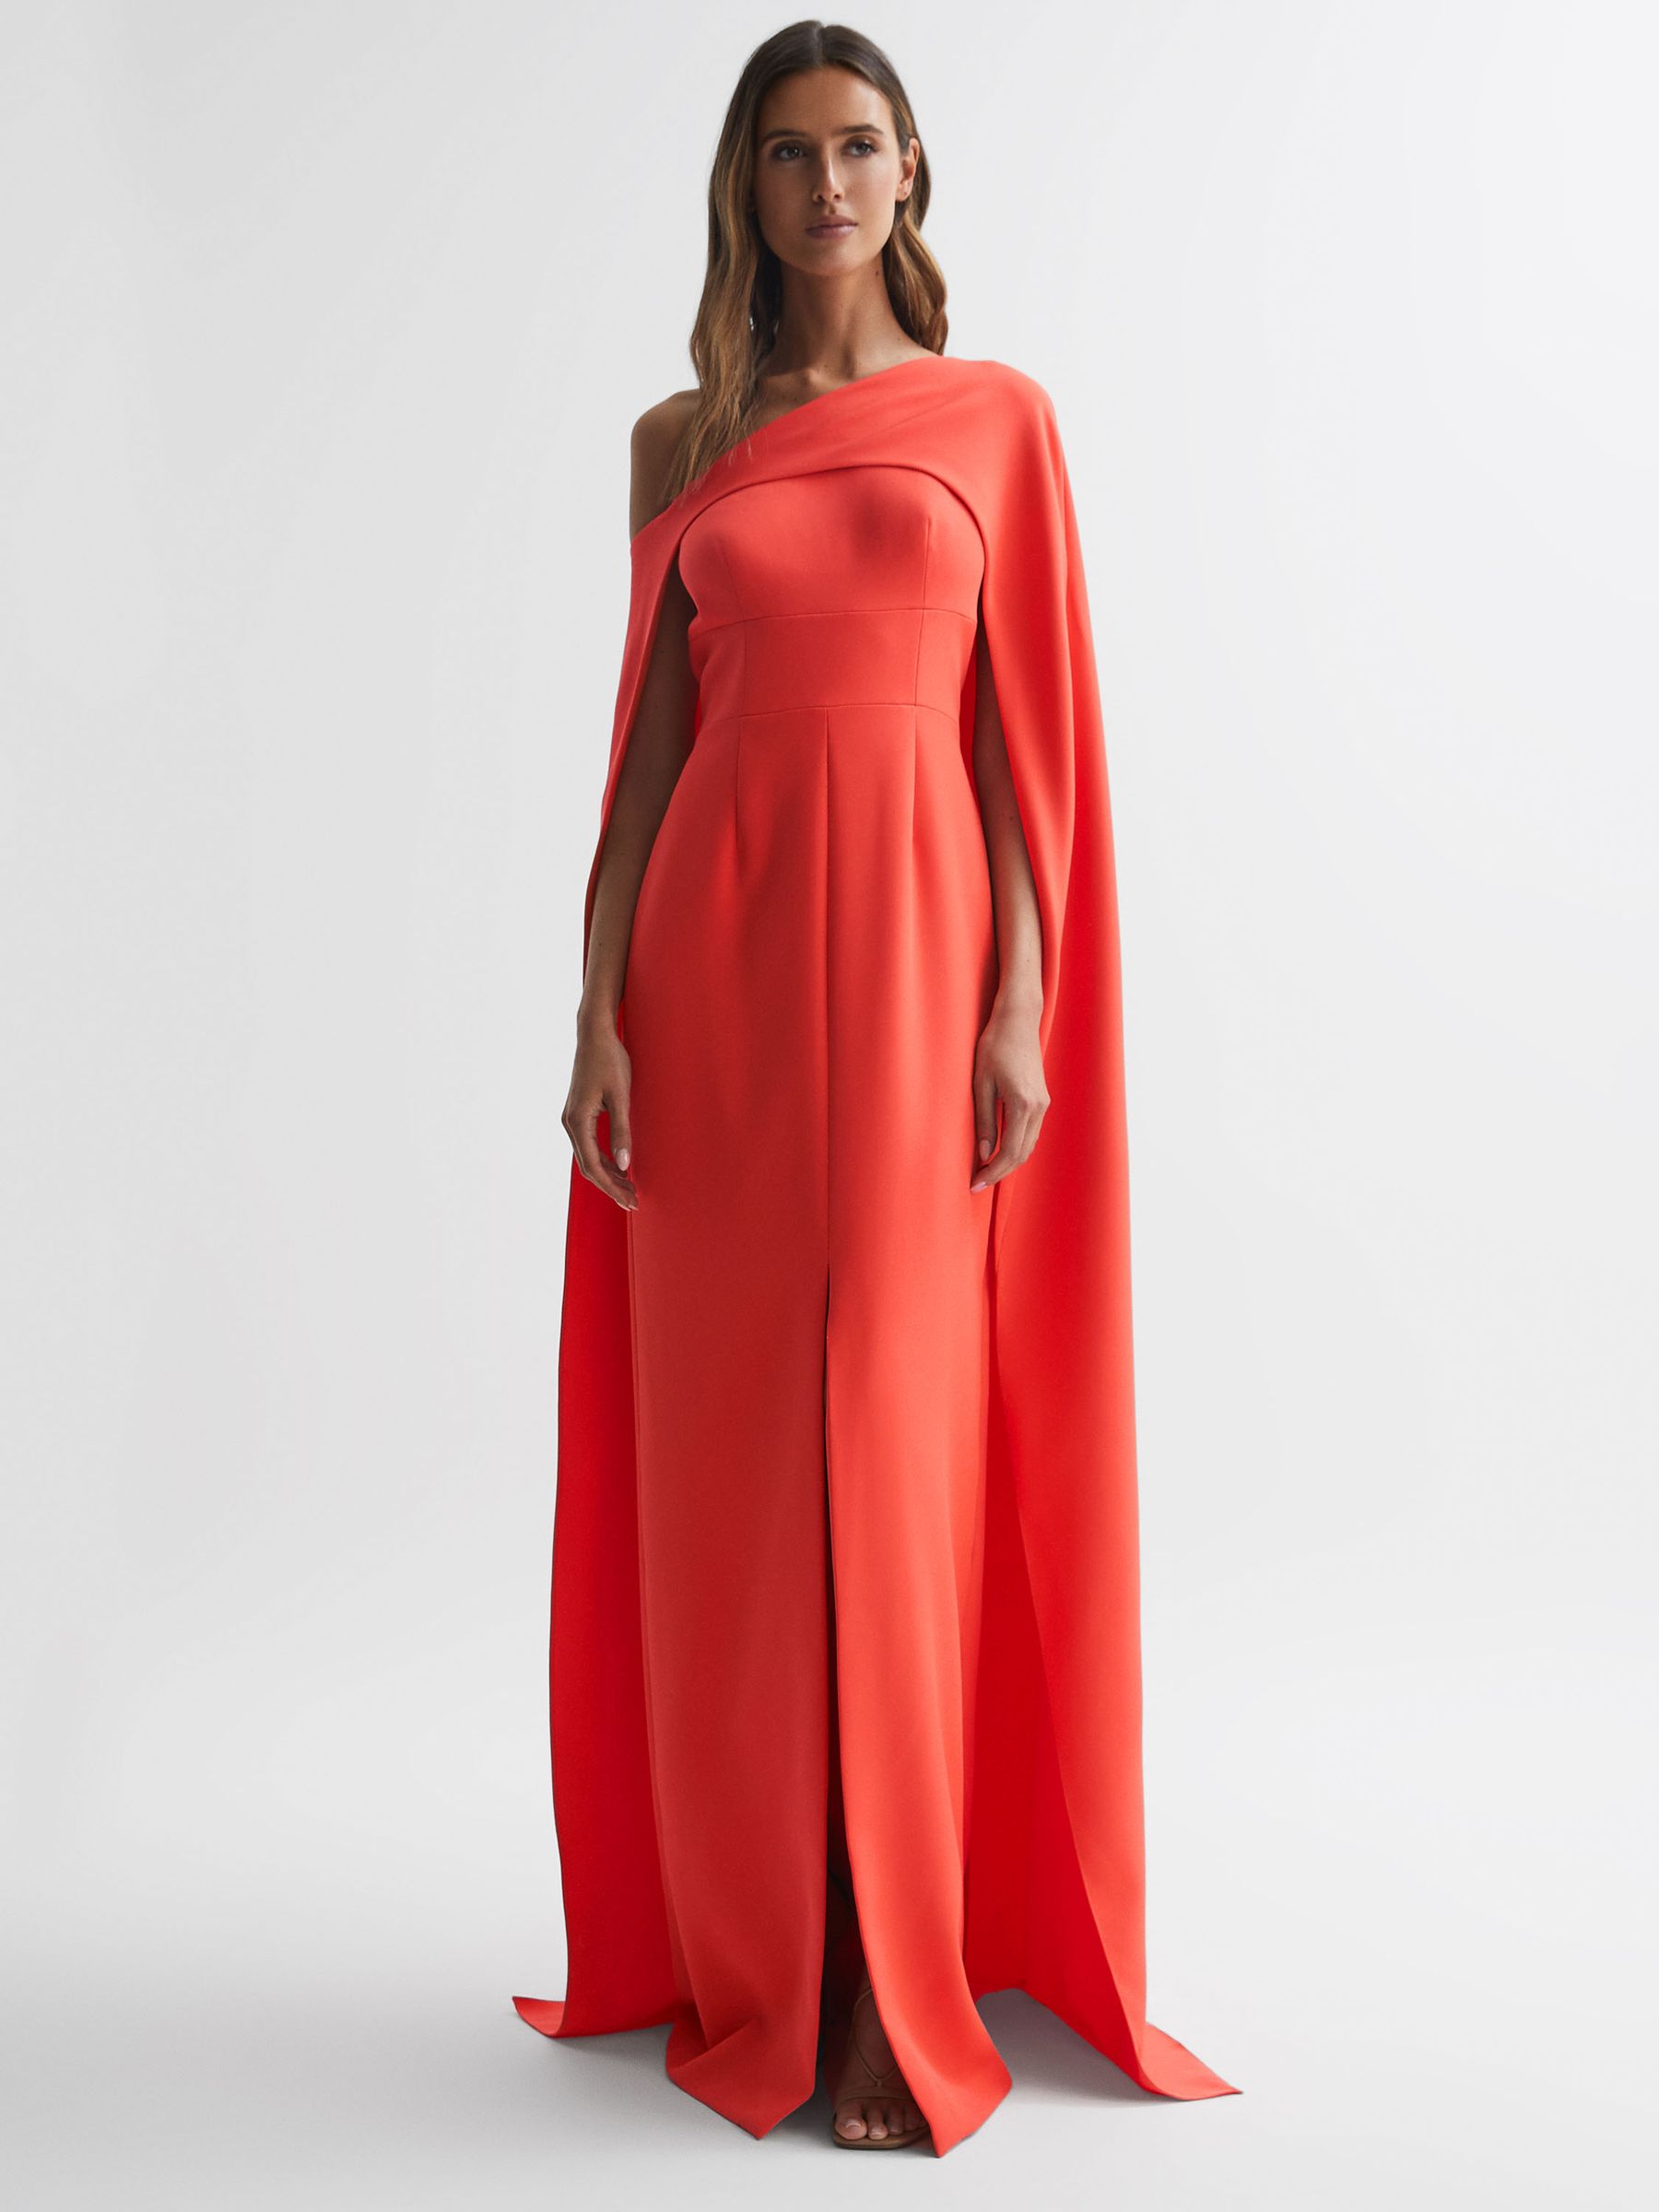 Reiss Elycia Halston One Shoulder Cape Maxi Dress | REISS USA